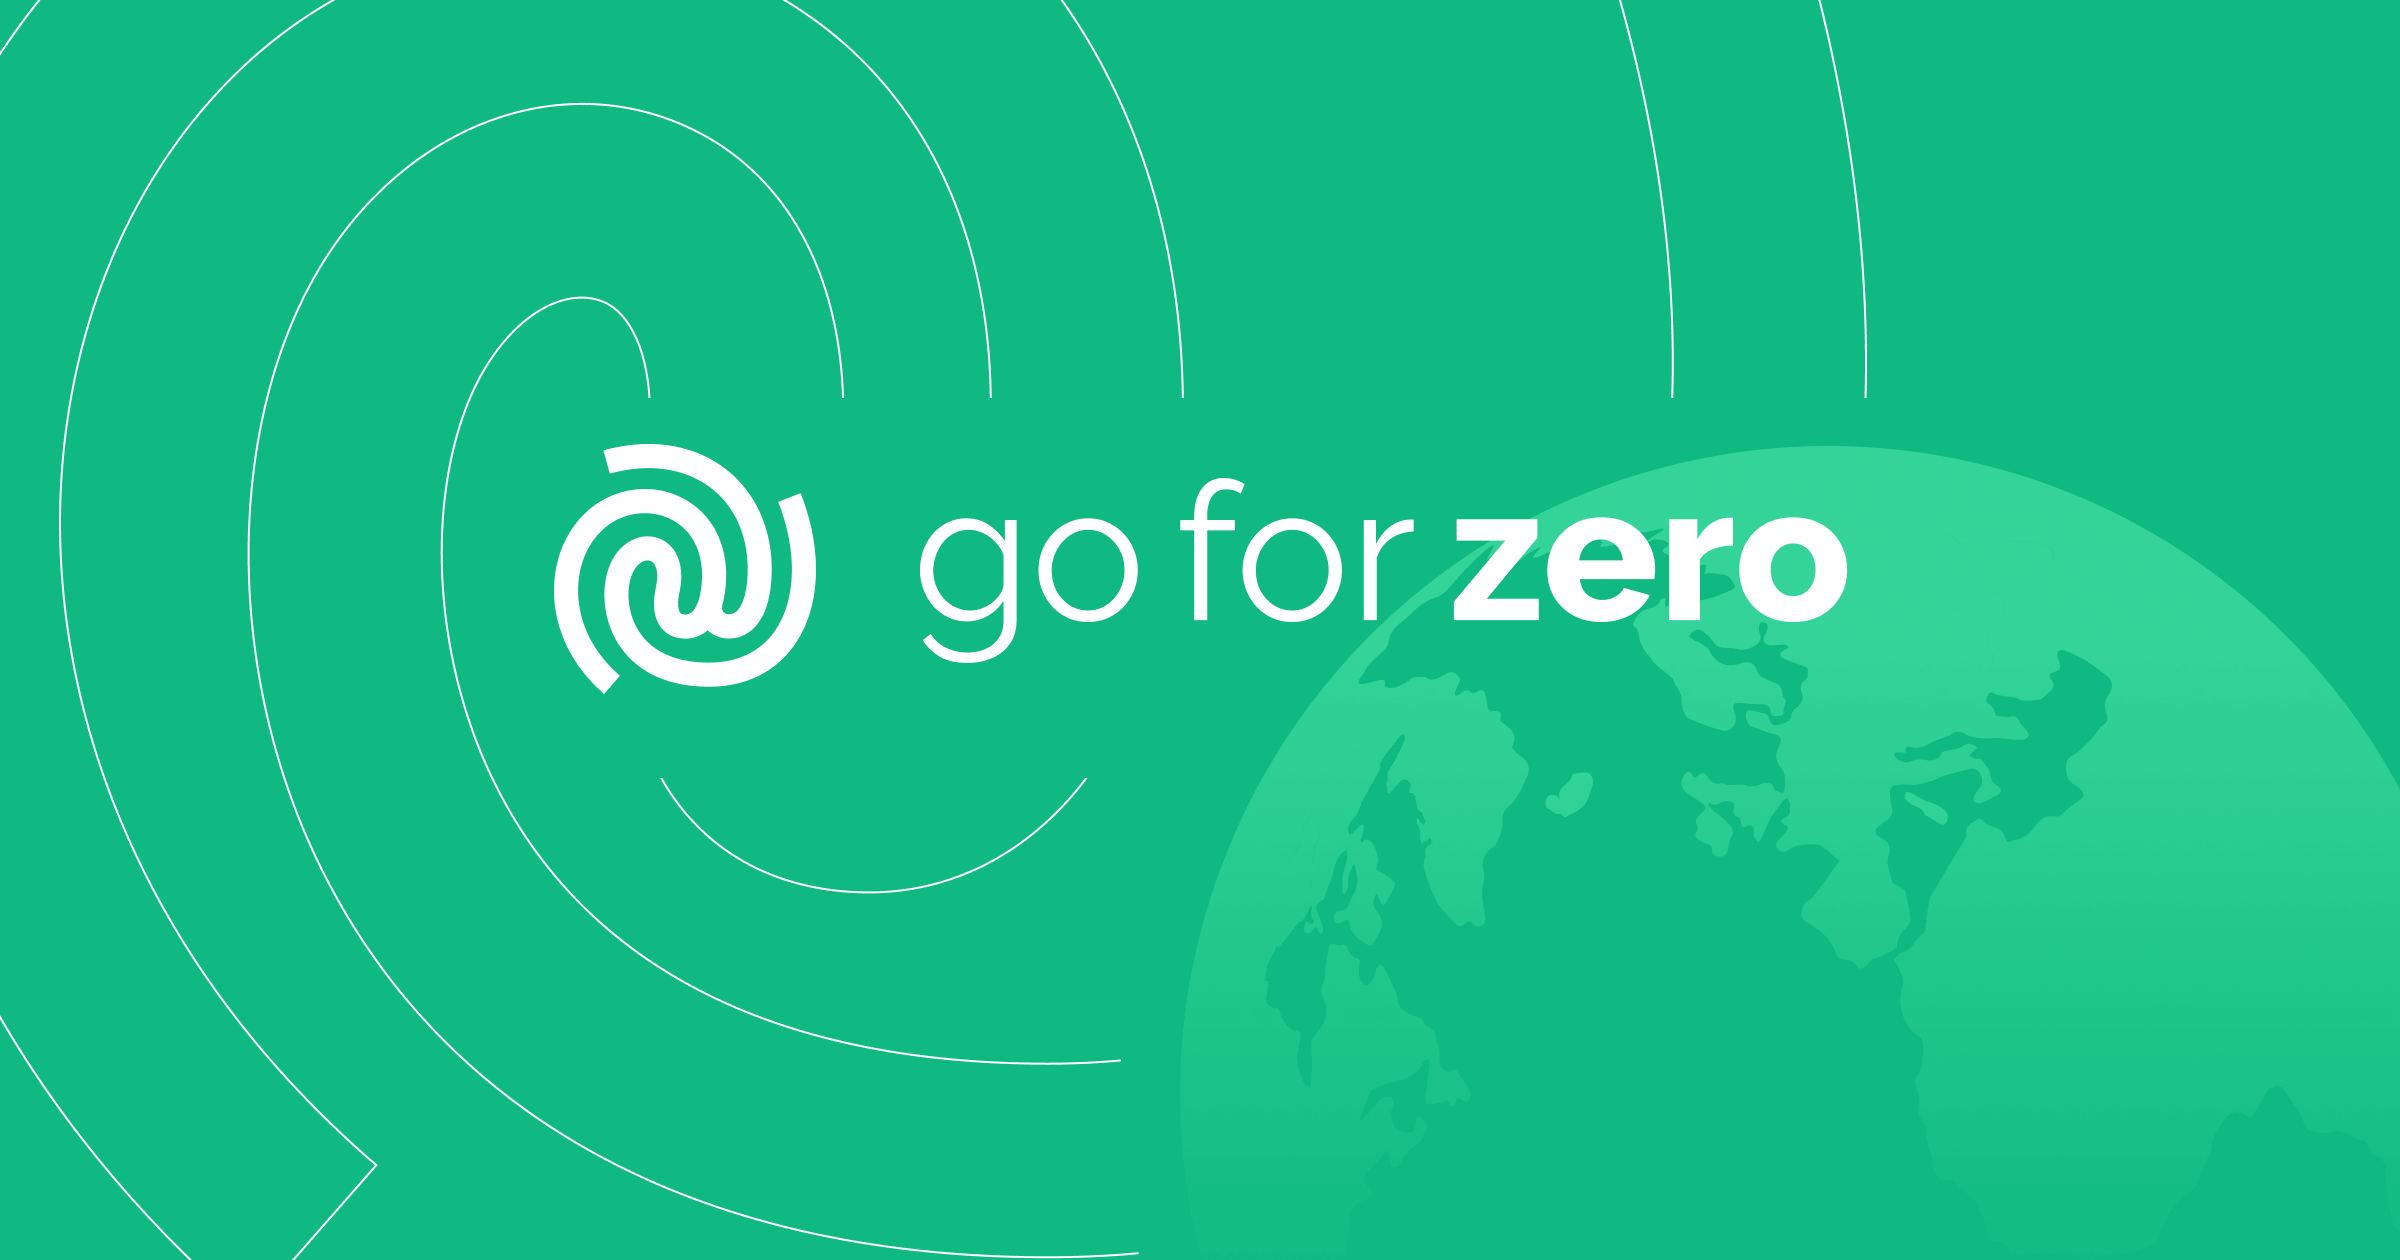 Hoe Go For Zero zijn eigen merk lanceerde met duurzaamheid op de voorgrond